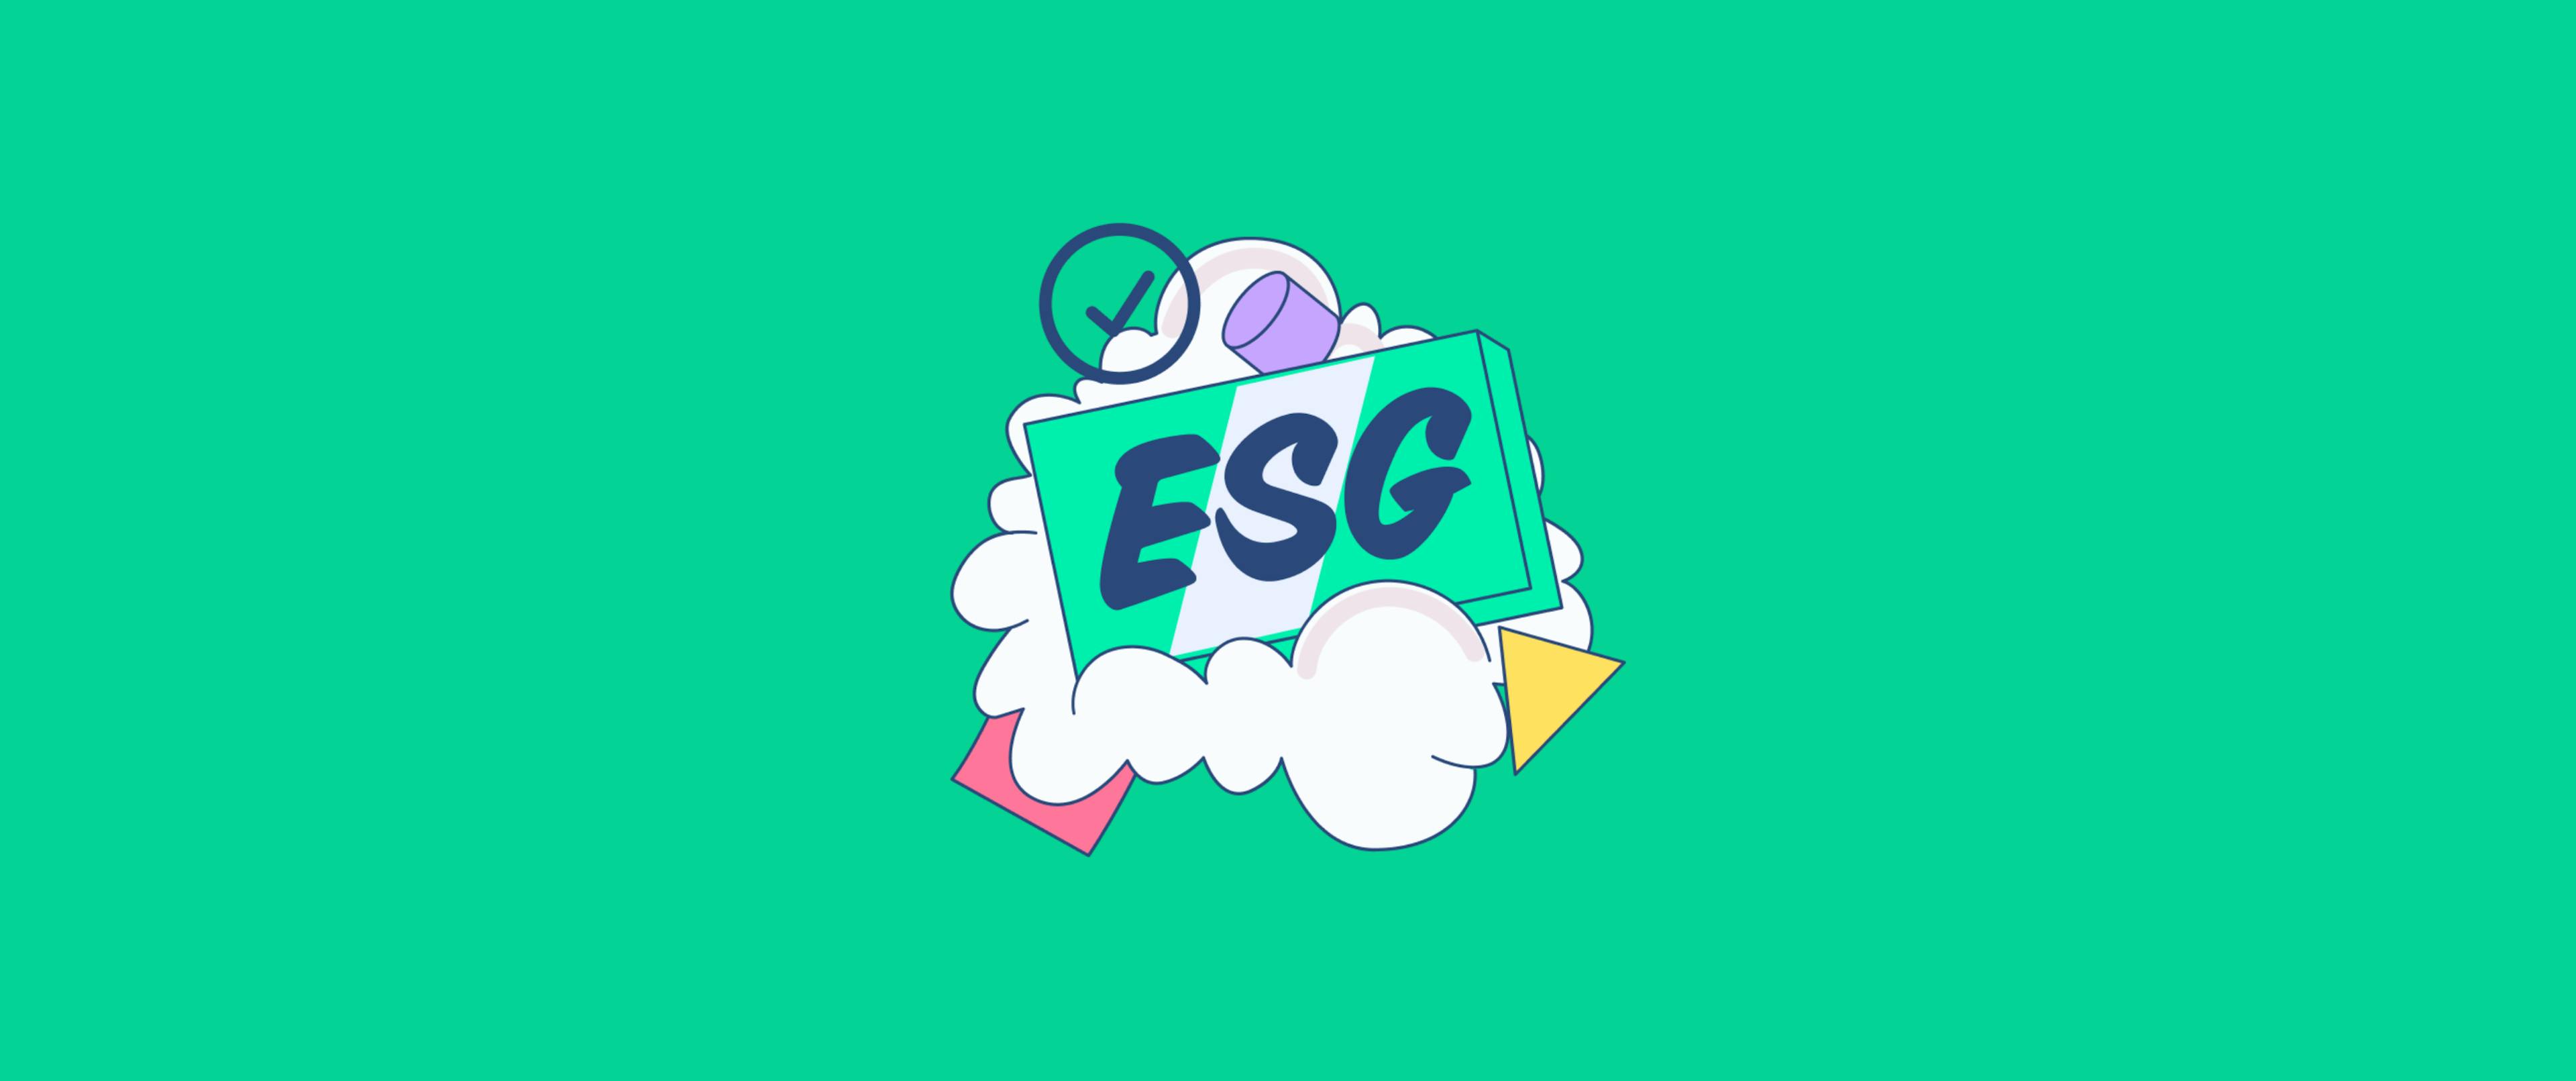 Header-Bild mit grünem Hintergrund, das nachhaltiges Investieren durch ESG-Wolken und umweltfreundliche Symbole illustriert.